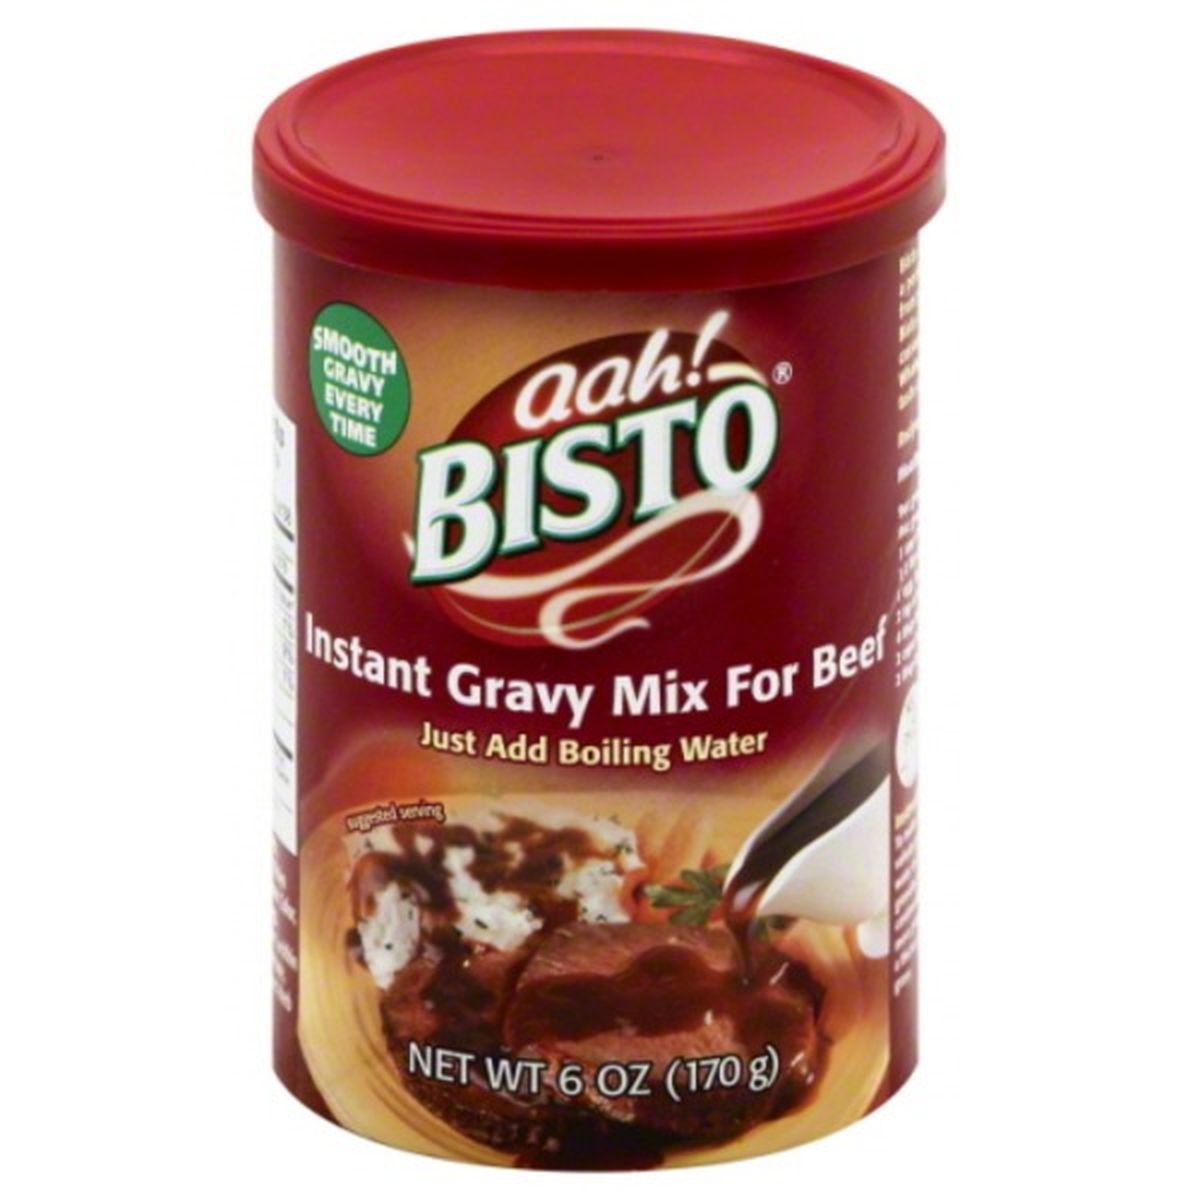 Calories in aah! Bisto Gravy Mix, Instant, for Beef